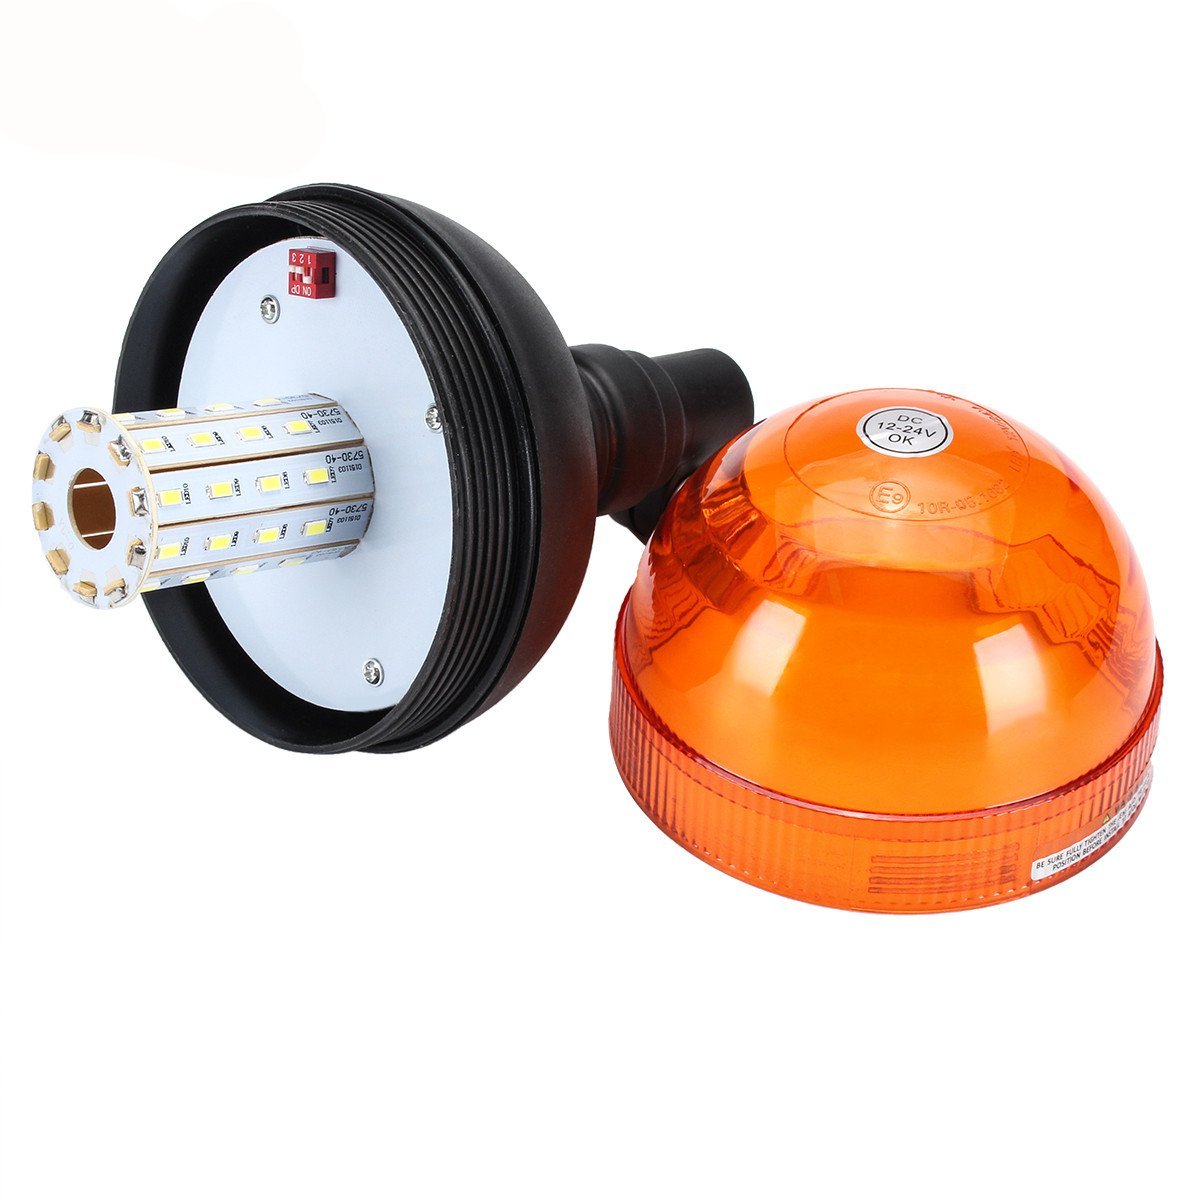 AGRISHOP 12/24V LED Gyrophare Magnetique,Gyrophare led Orange